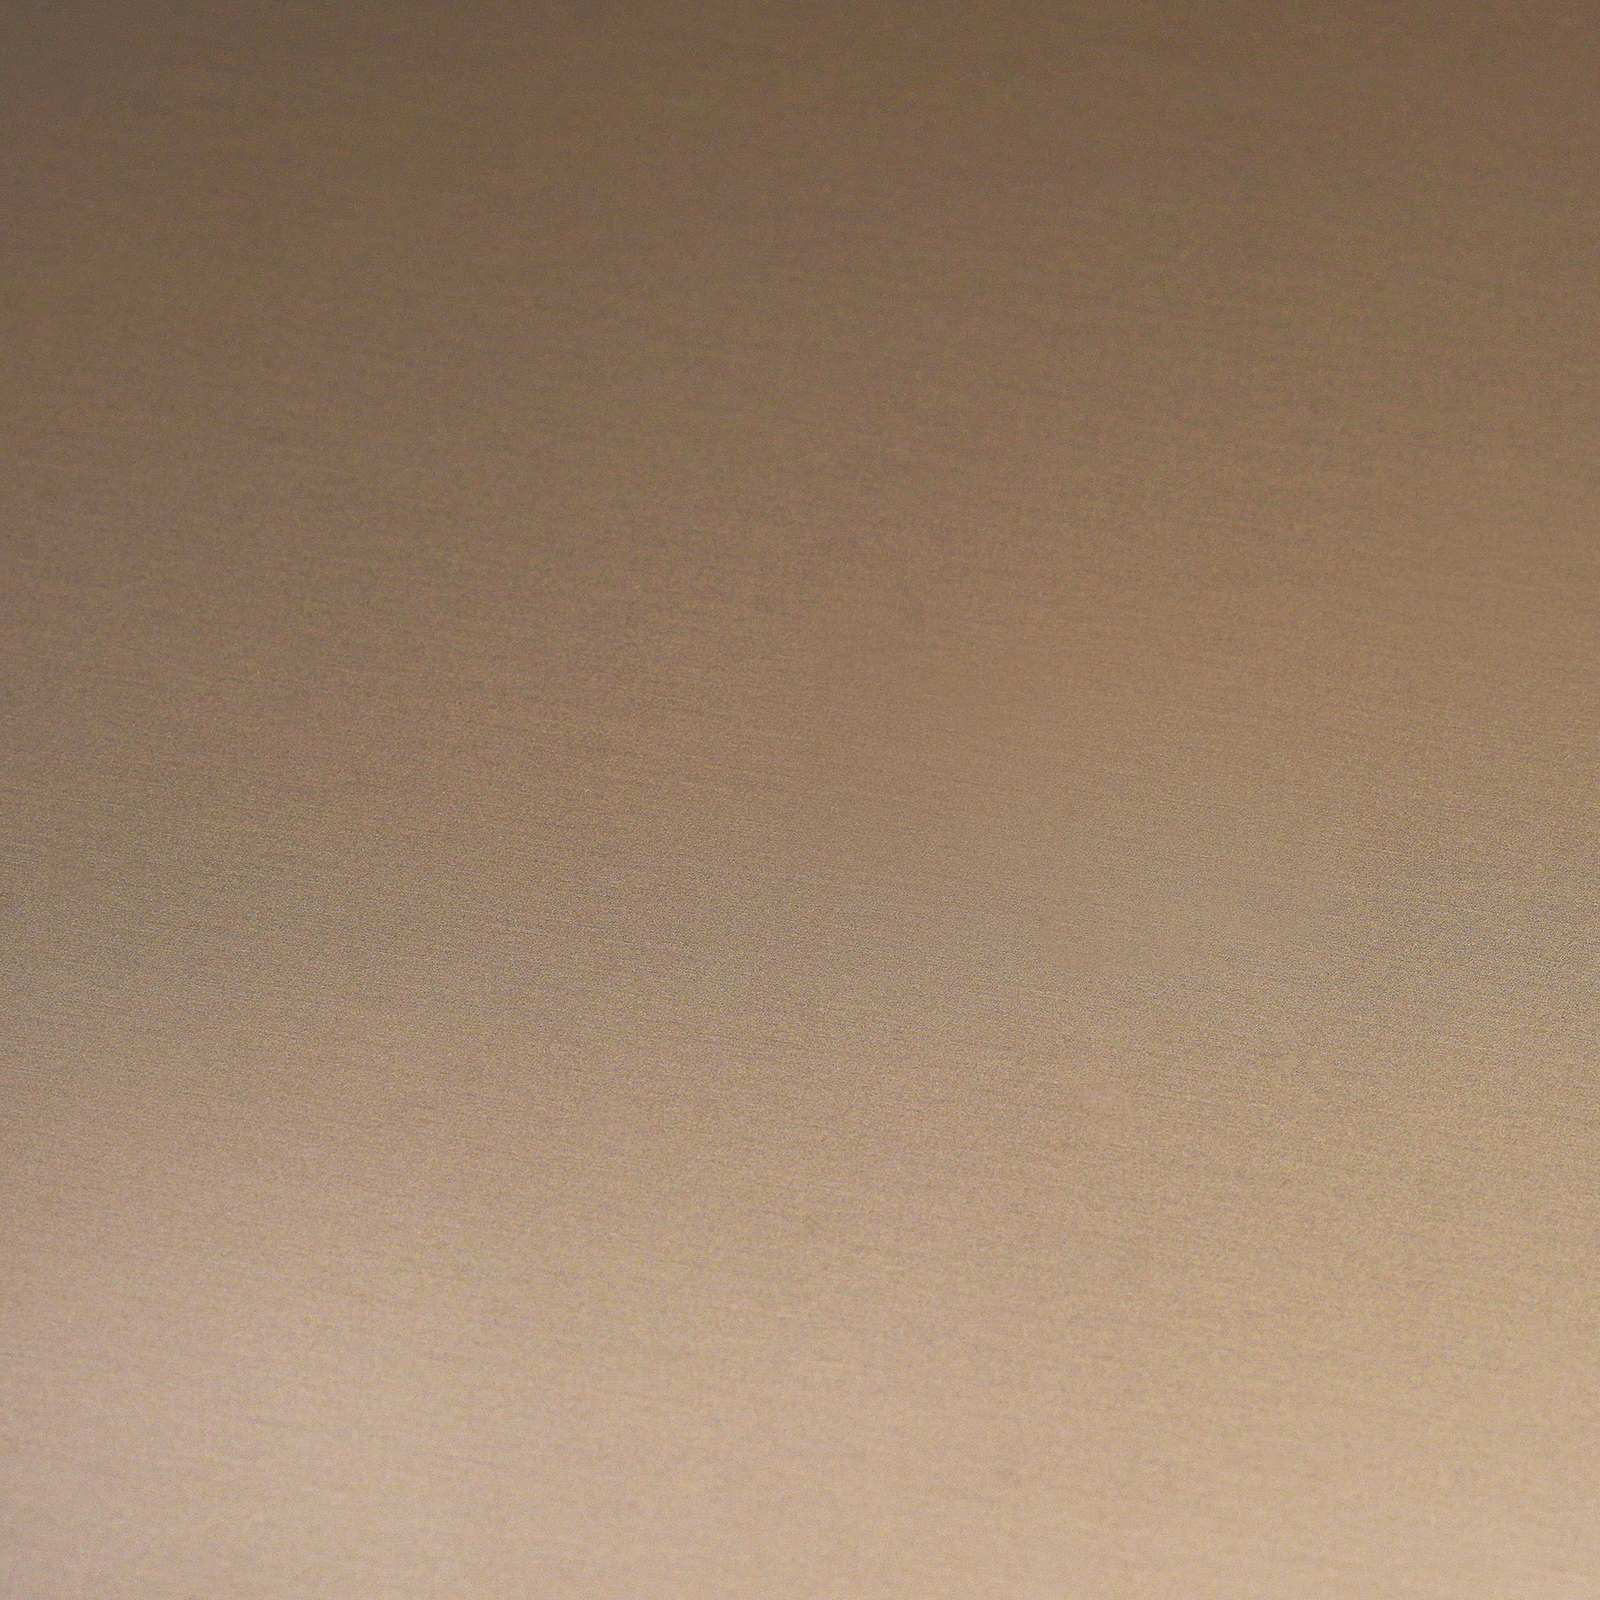 Nástenné svietidlo Escale Blade LED, sivá farba, Ø 95 cm